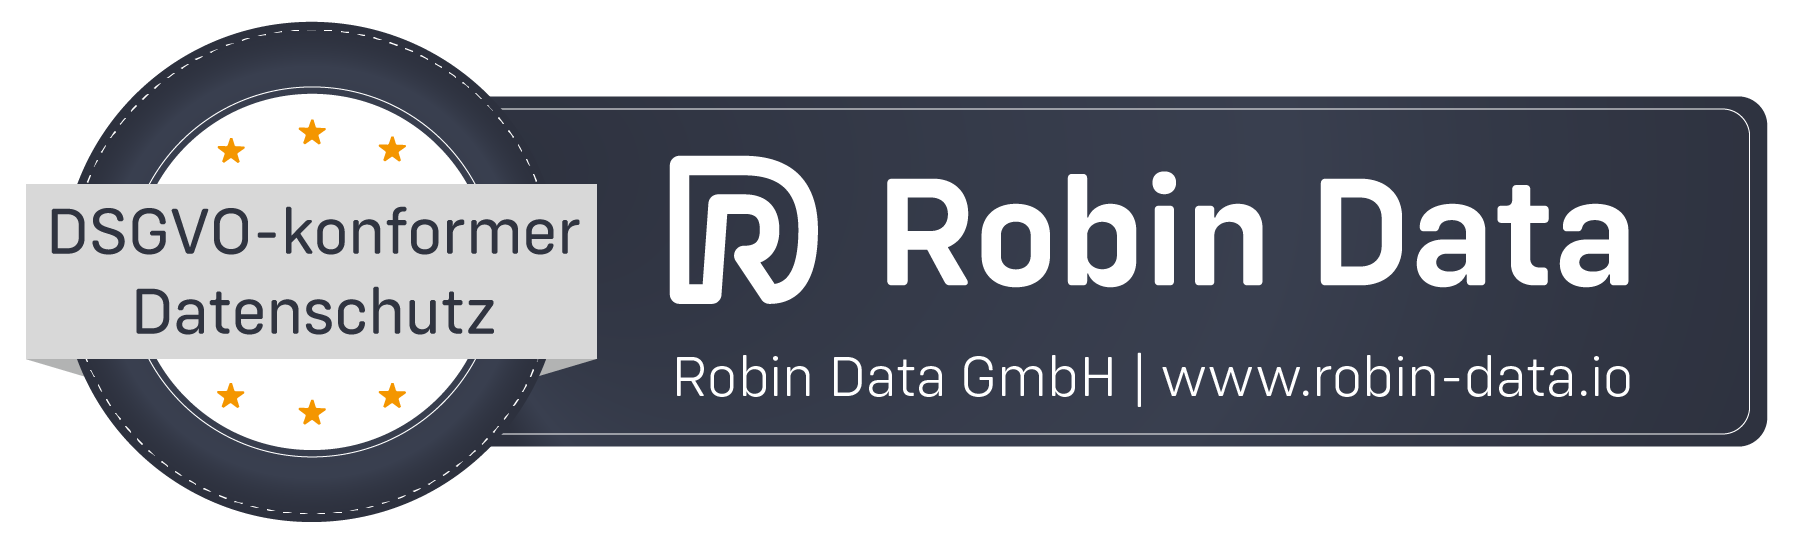 Datenschutz-Qualitätssiegel DSGVO-konform mit Robin Data